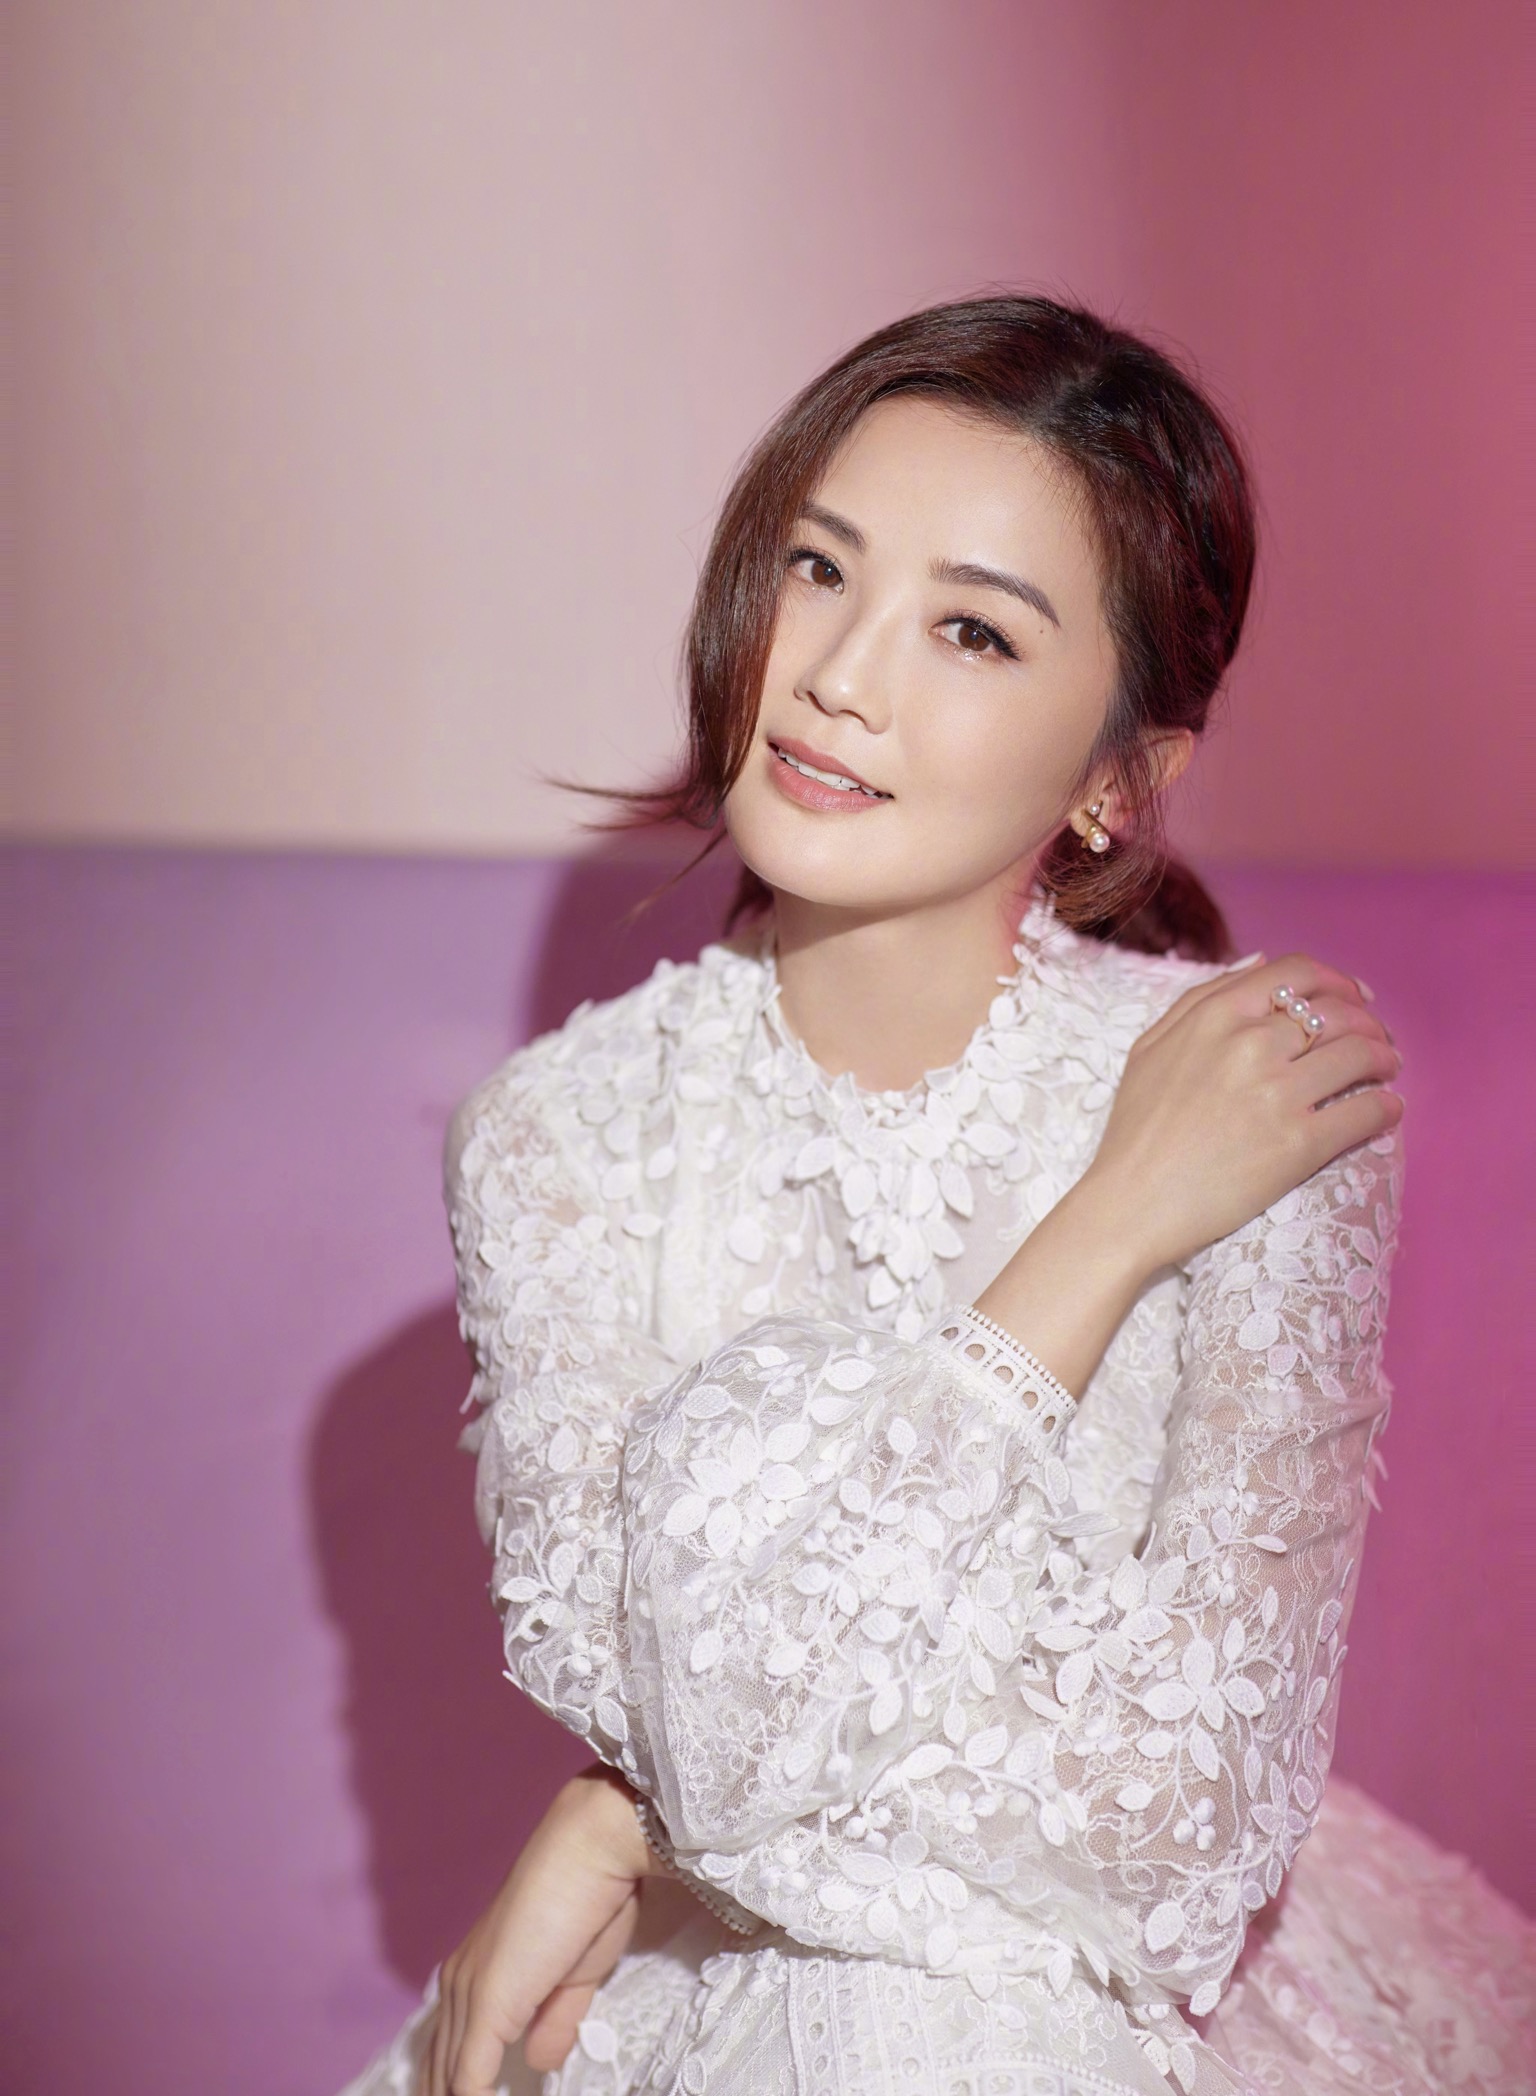 Asian Women Celebrity Actress Twins Zhuoyan Cai 1536x2096